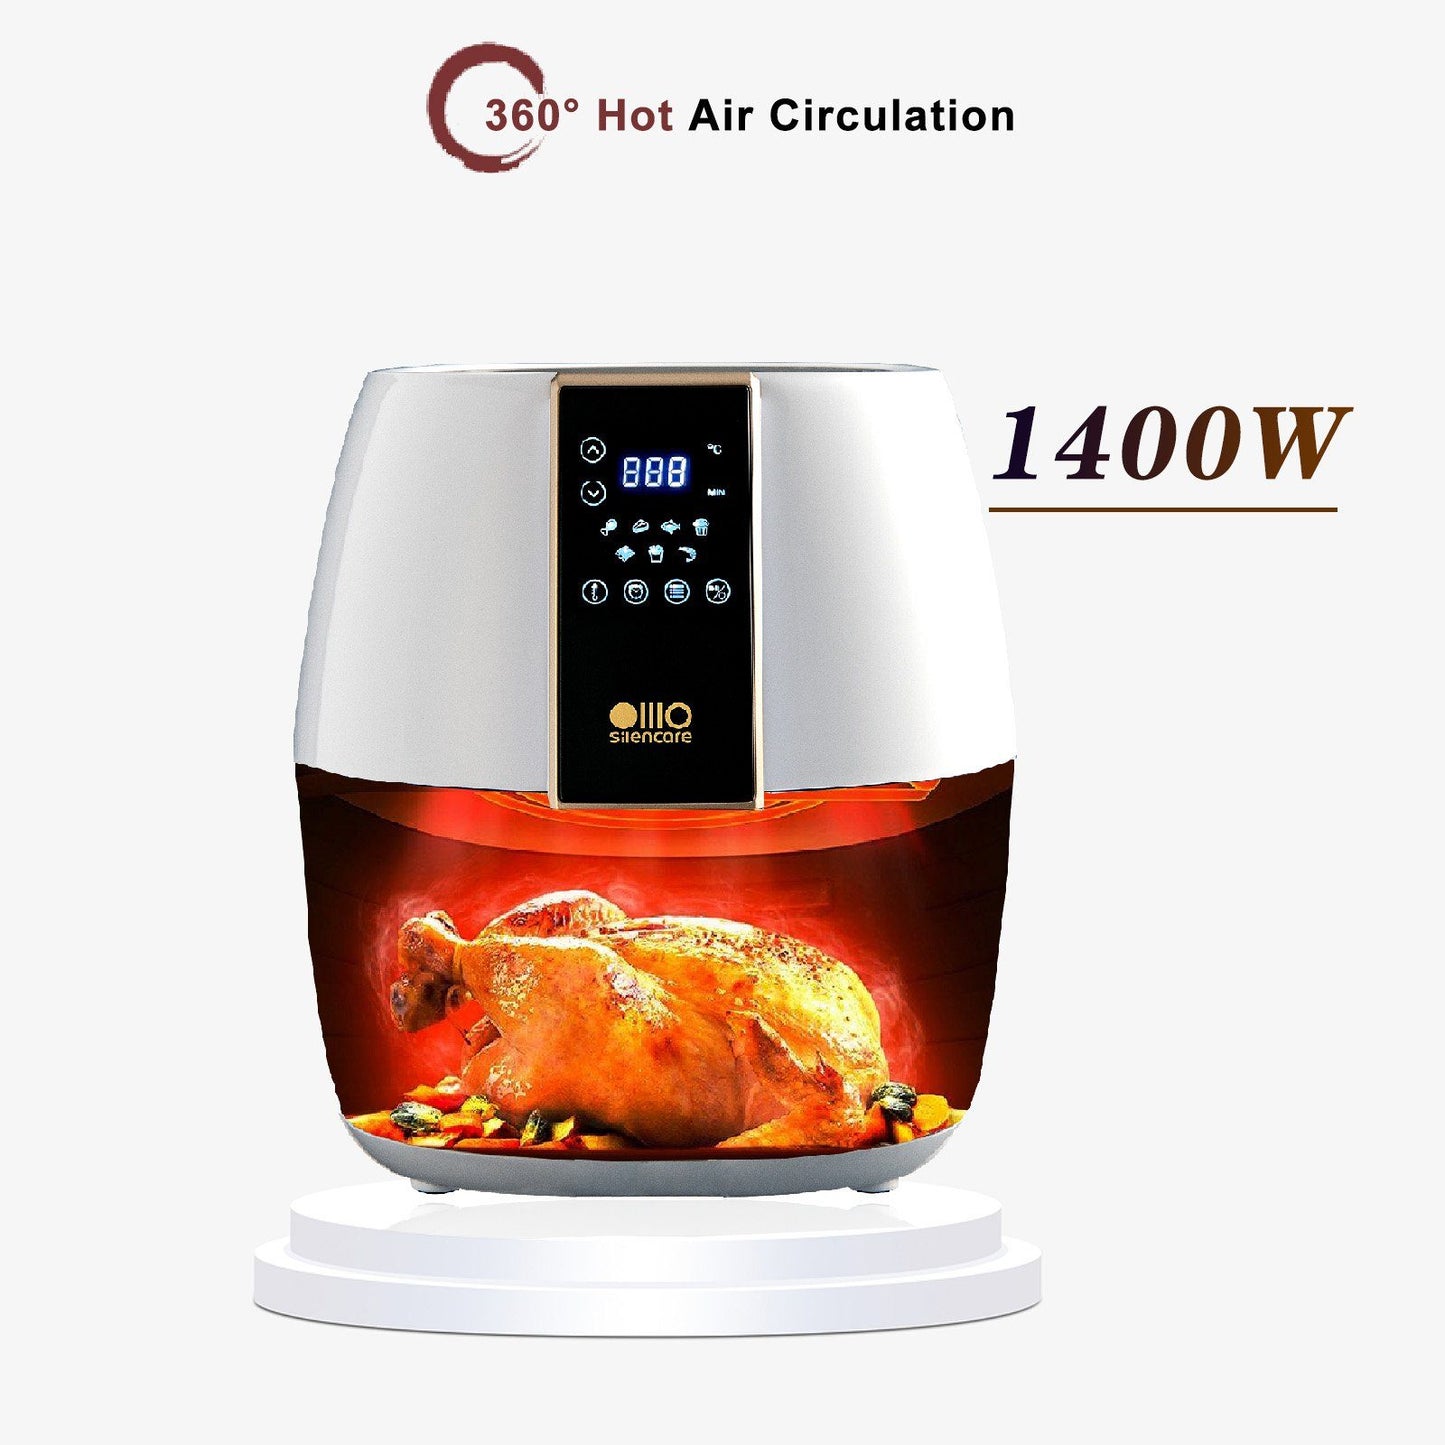 Fine Life Pro Heißluftfritteuse Air Fryer, 1400W Küchengerät, Automatische Abschaltung mit Überhitzungsschutz